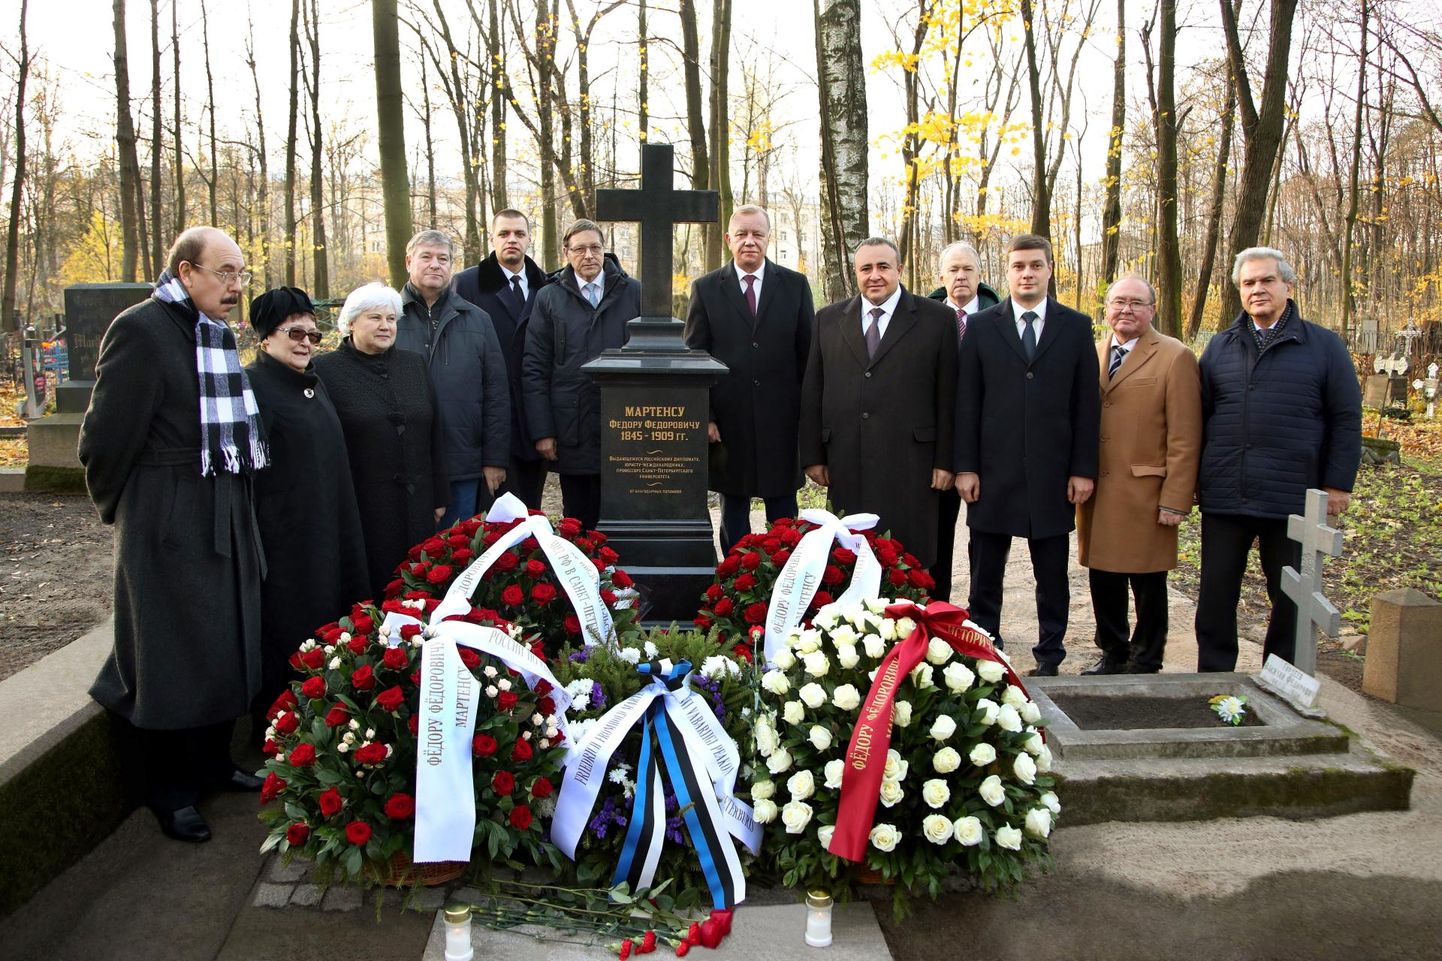 Peterburis Volkovi kalmistul avati Pärnus sündinud rahvusvaheliselt tuntud õigusteadlase professor Friedrich Fromhold Martensi haua tähis.